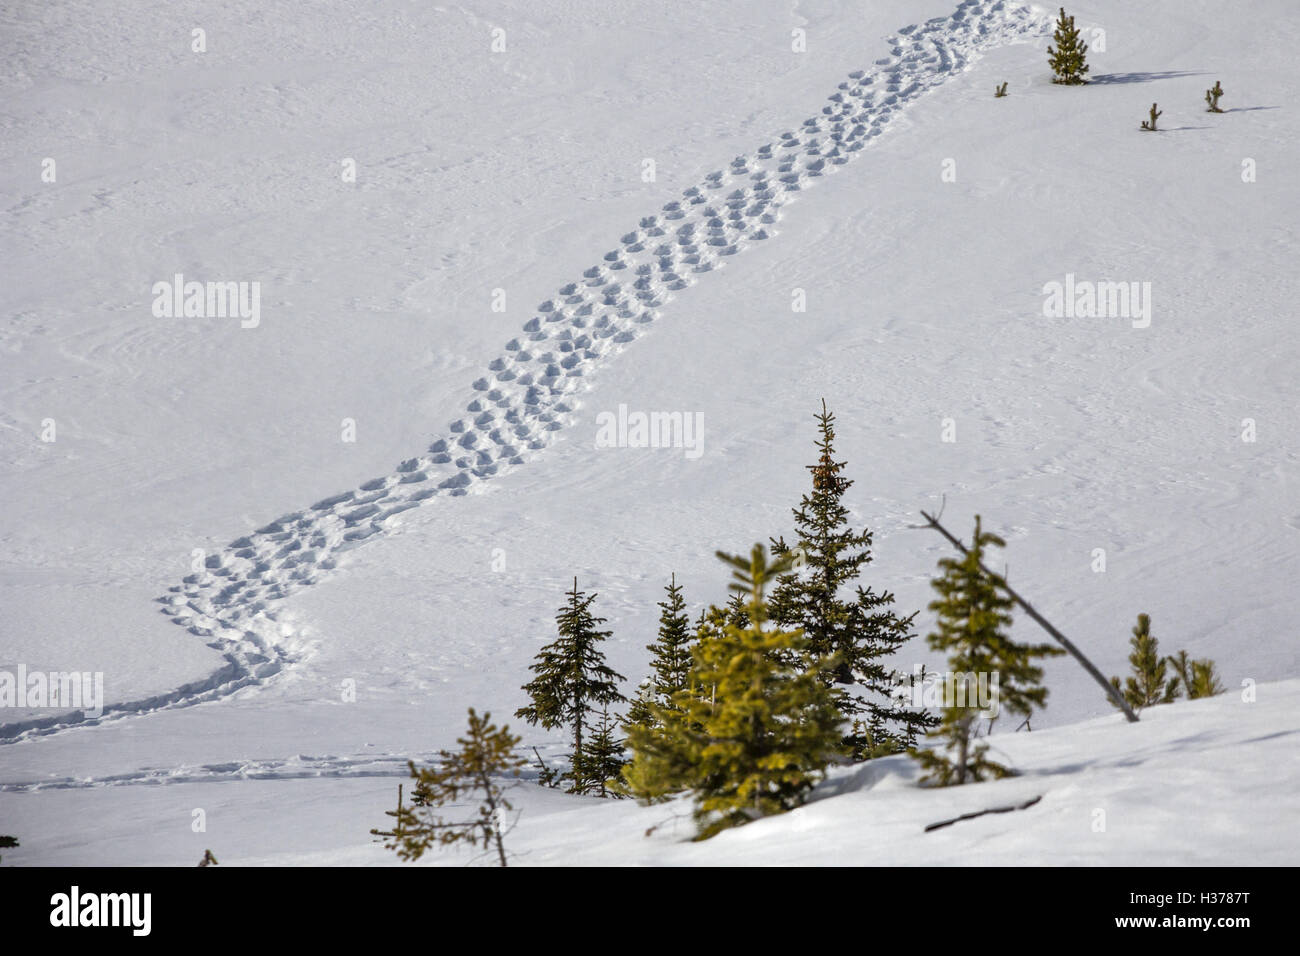 Plusieurs pistes pour raquettes mènent en diagonale sur un champ de neige fraîche parsemée de petits conifères Banque D'Images